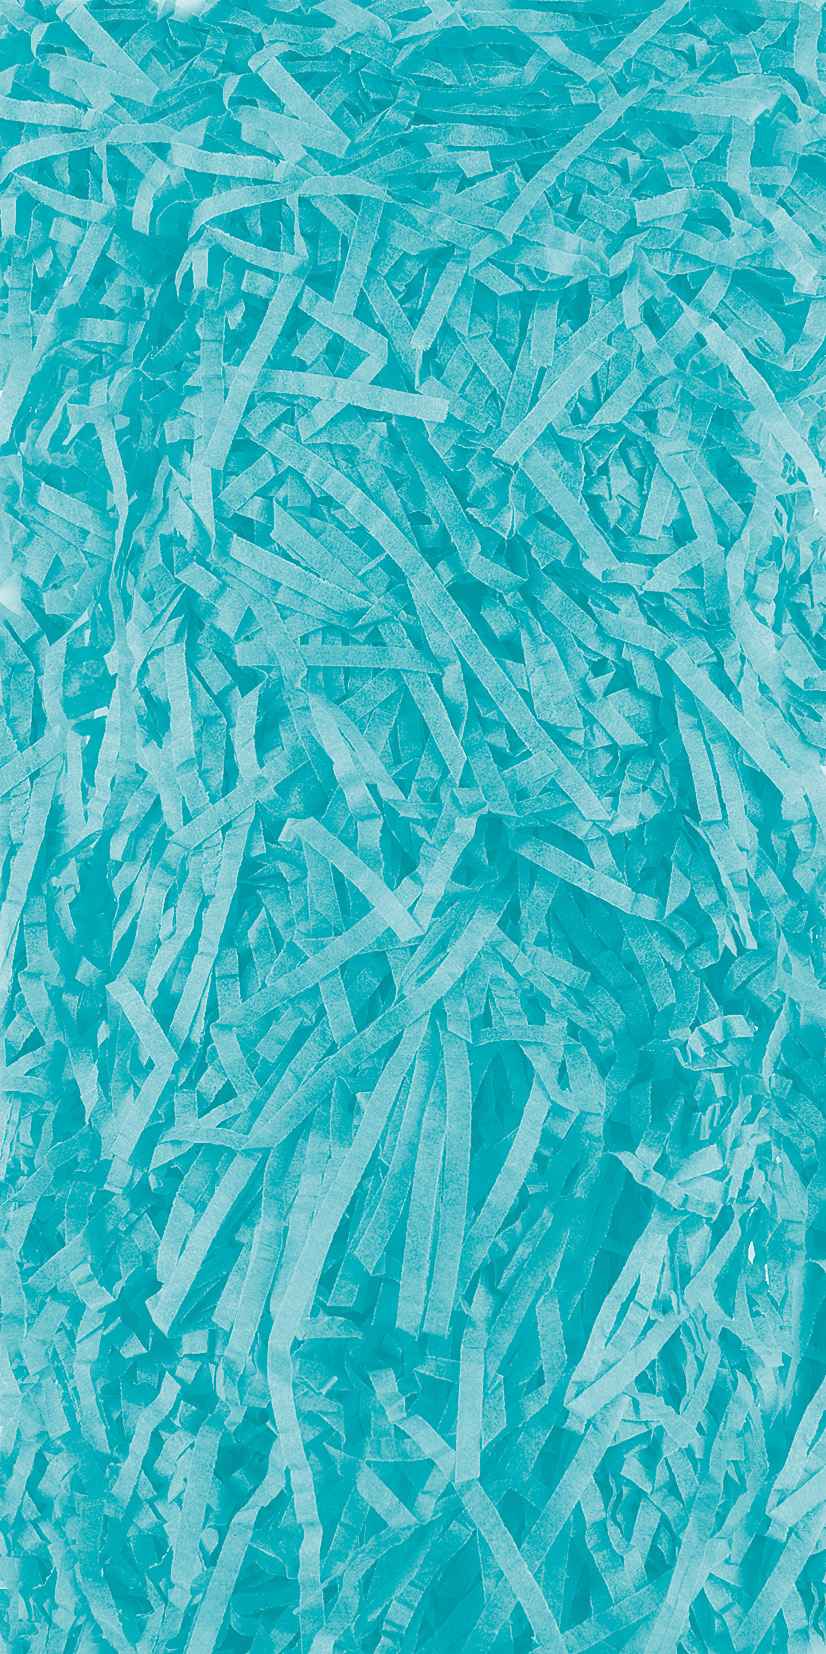 Shredded Tissue Paper 20g - Turquoise